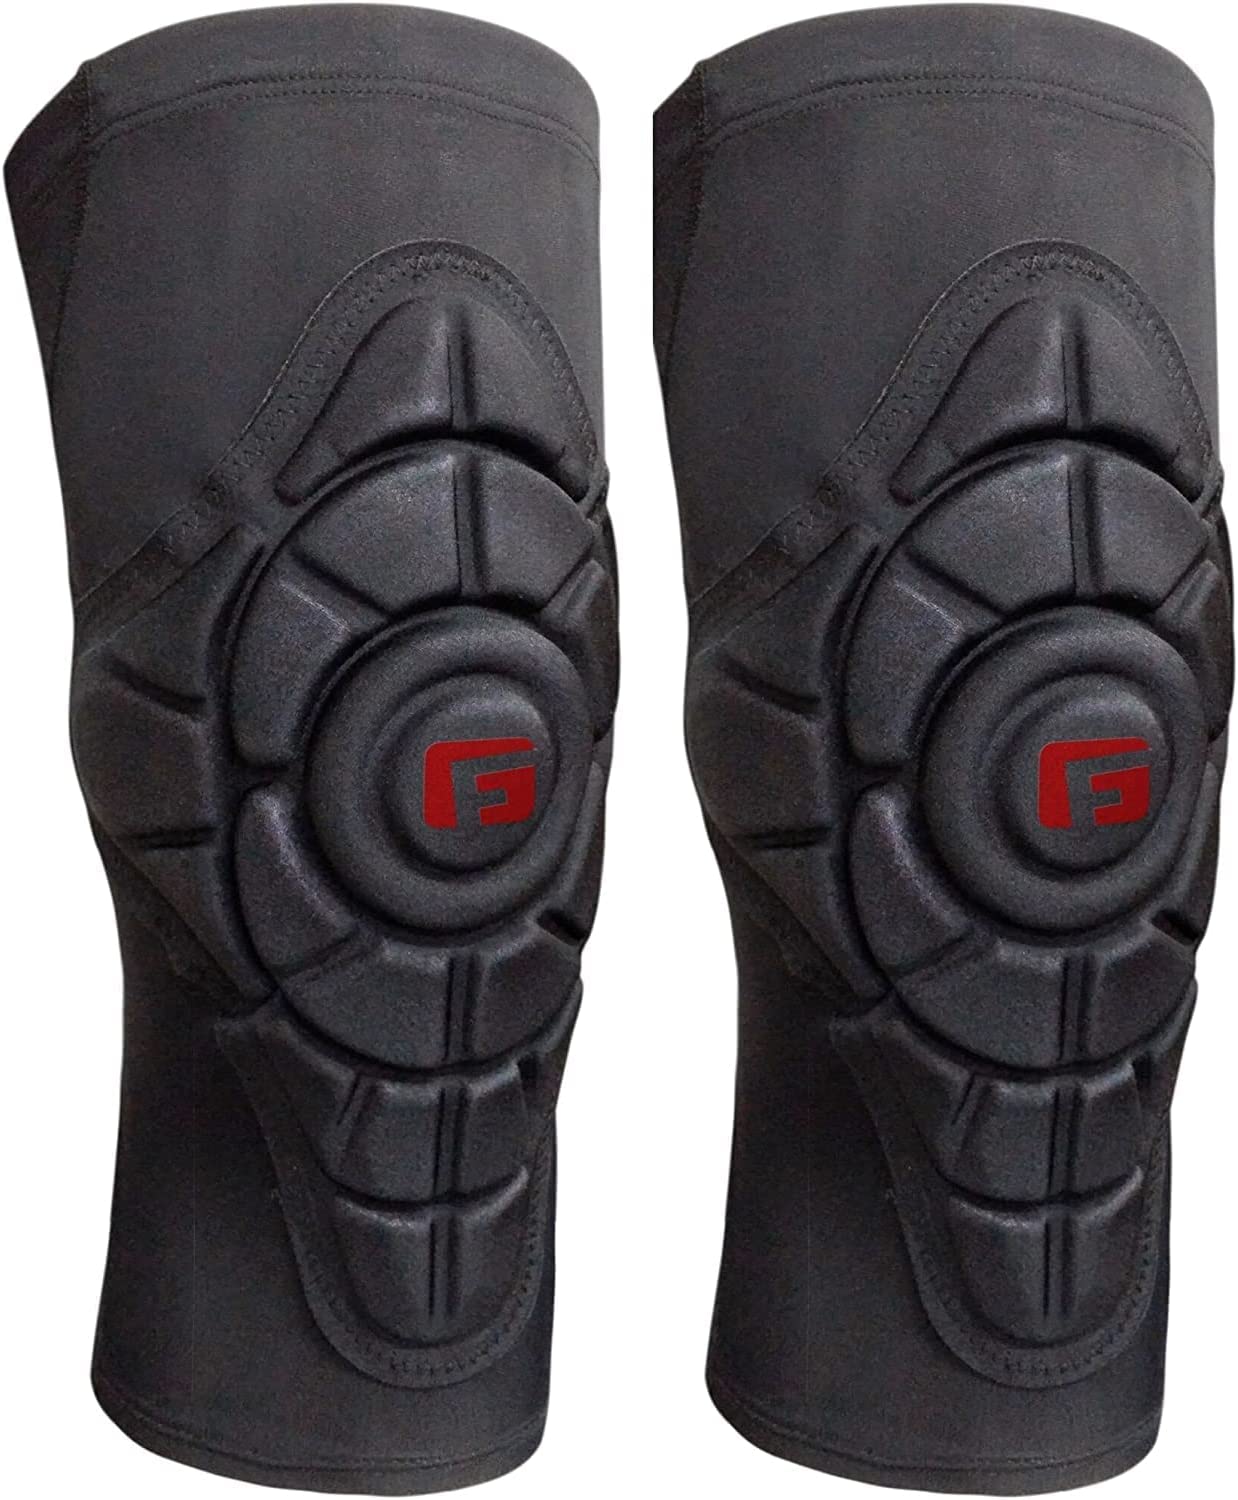 G-form pro slide knee pad